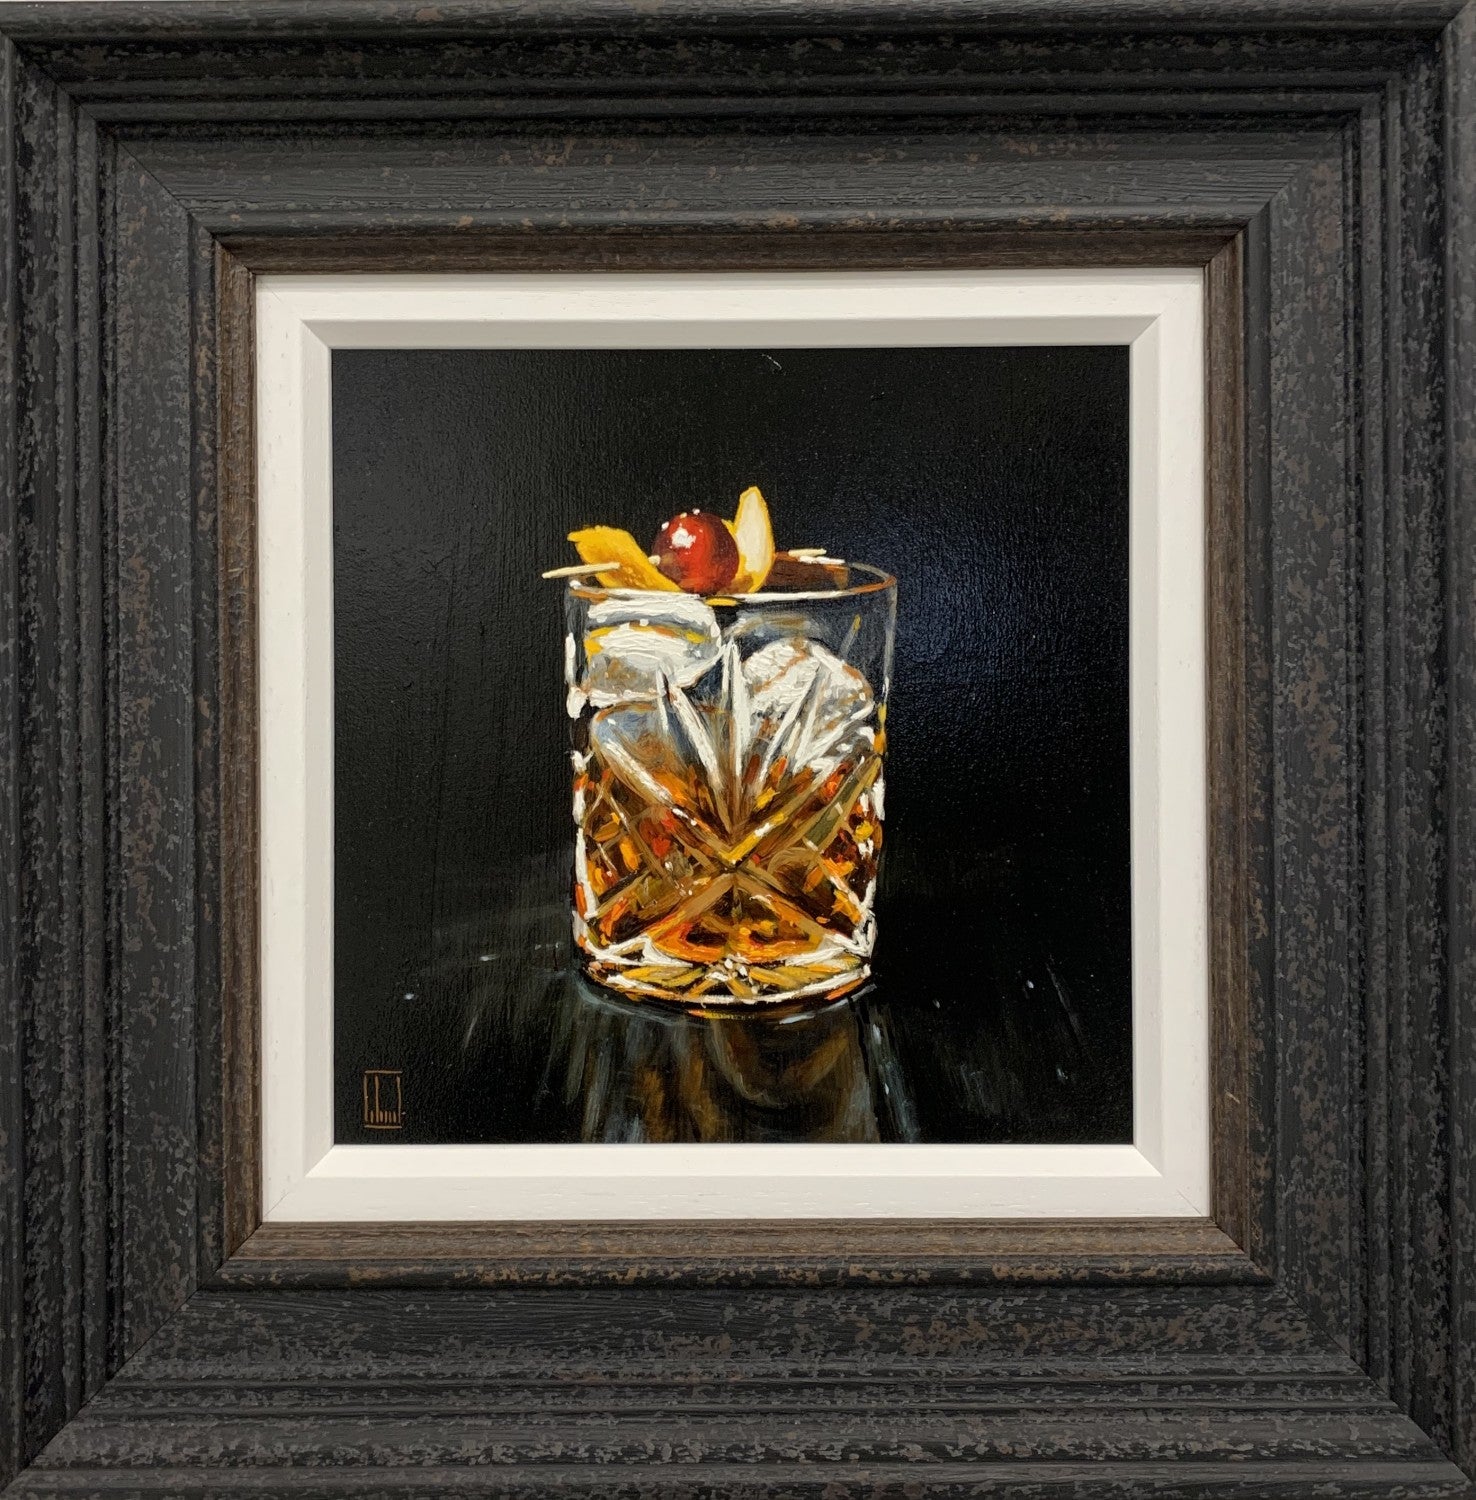 Richard Blunt - 'Old Fashioned' - Framed Original Artwork